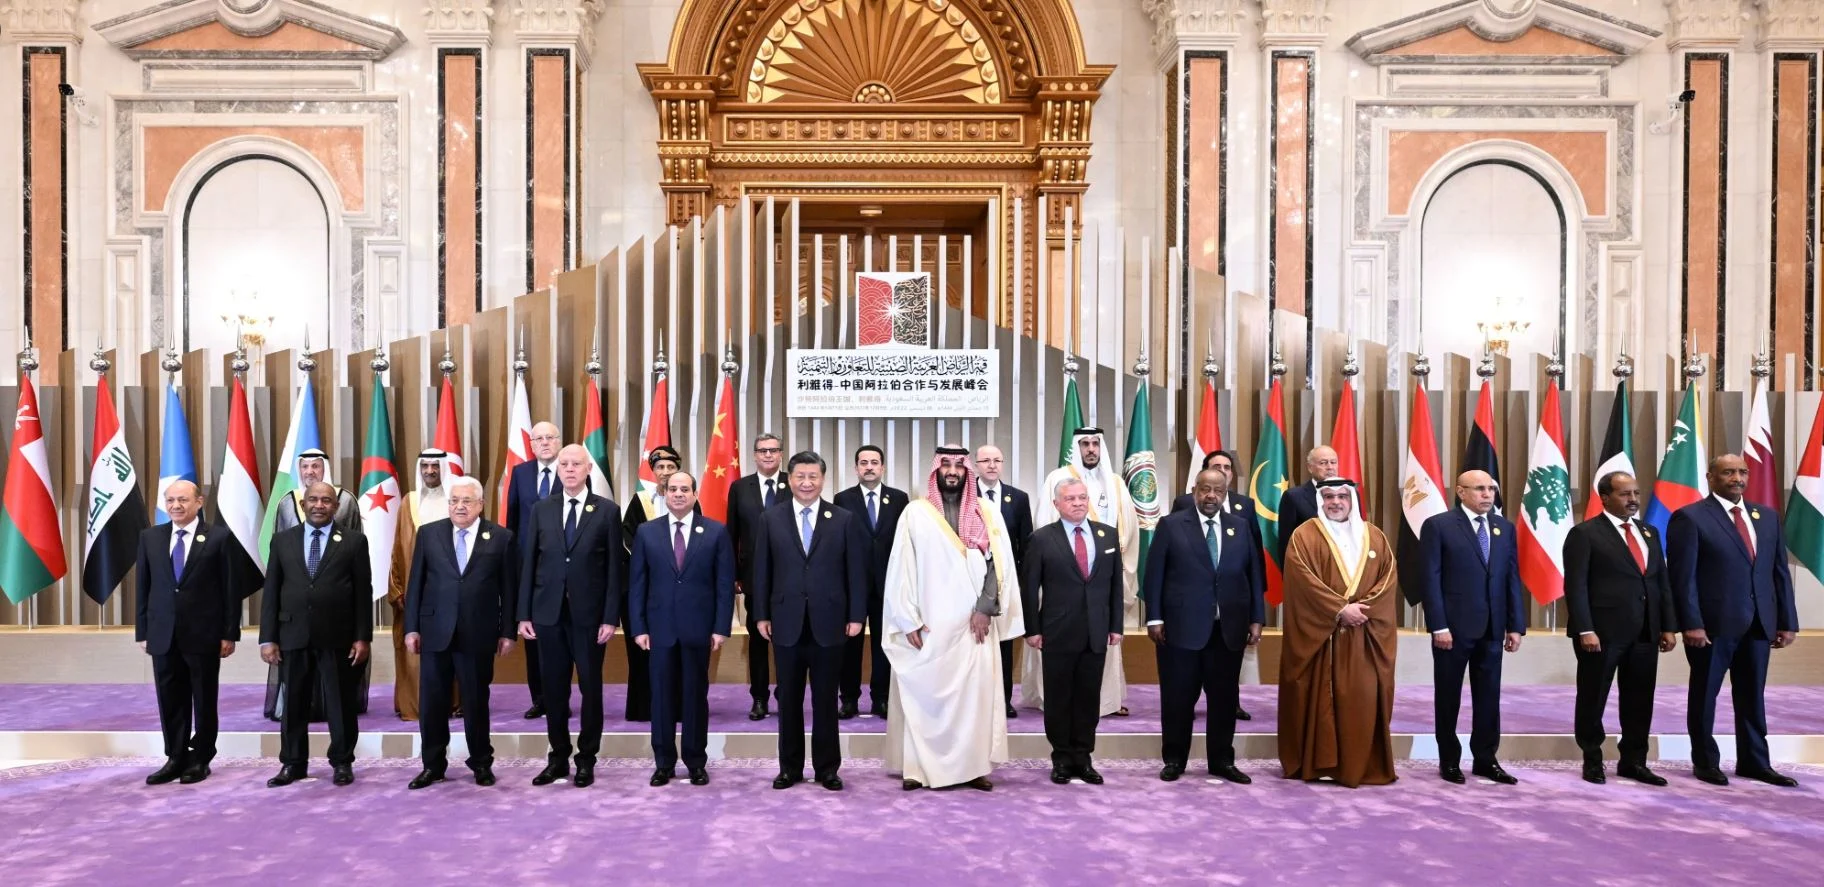 הסדר נותר על כנו? מנהיגי מדינות ערב ונשיא סין בפסגה הסינית-ערבית. סעודיה, בשבוע שעבר